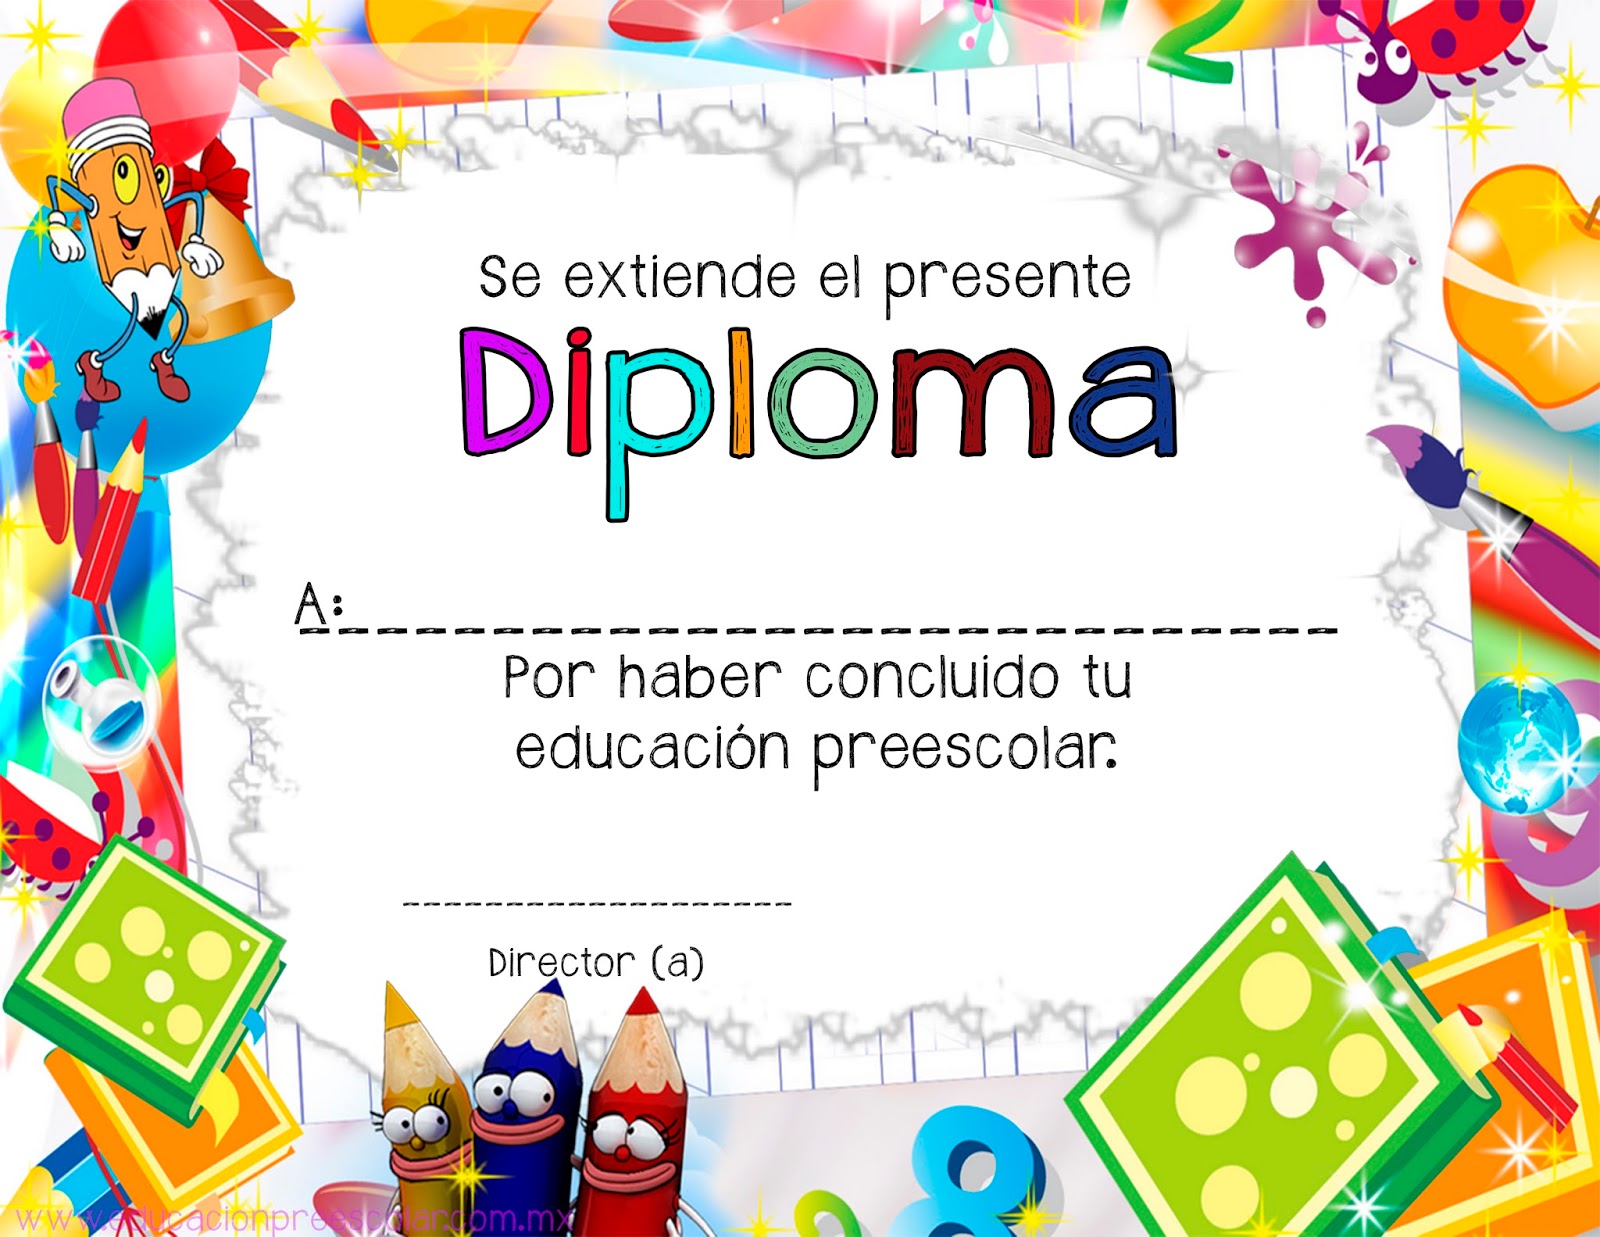 130 Ideas De Diplomas Diplomas Plantillas De Diplomas Diplomas Para